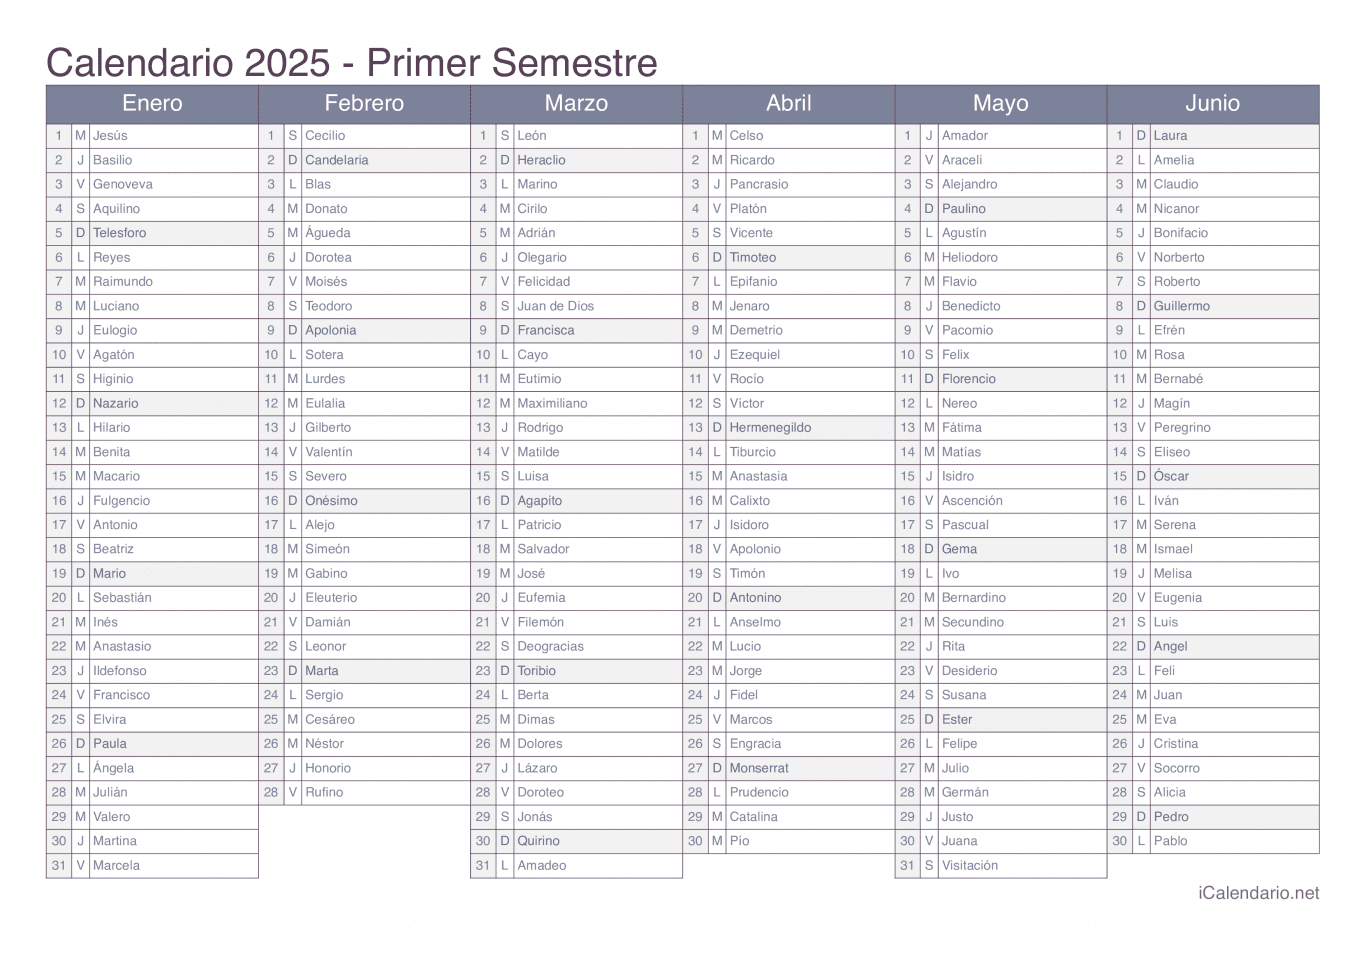 Calendario por semestre 2025 com festa do dia - Office